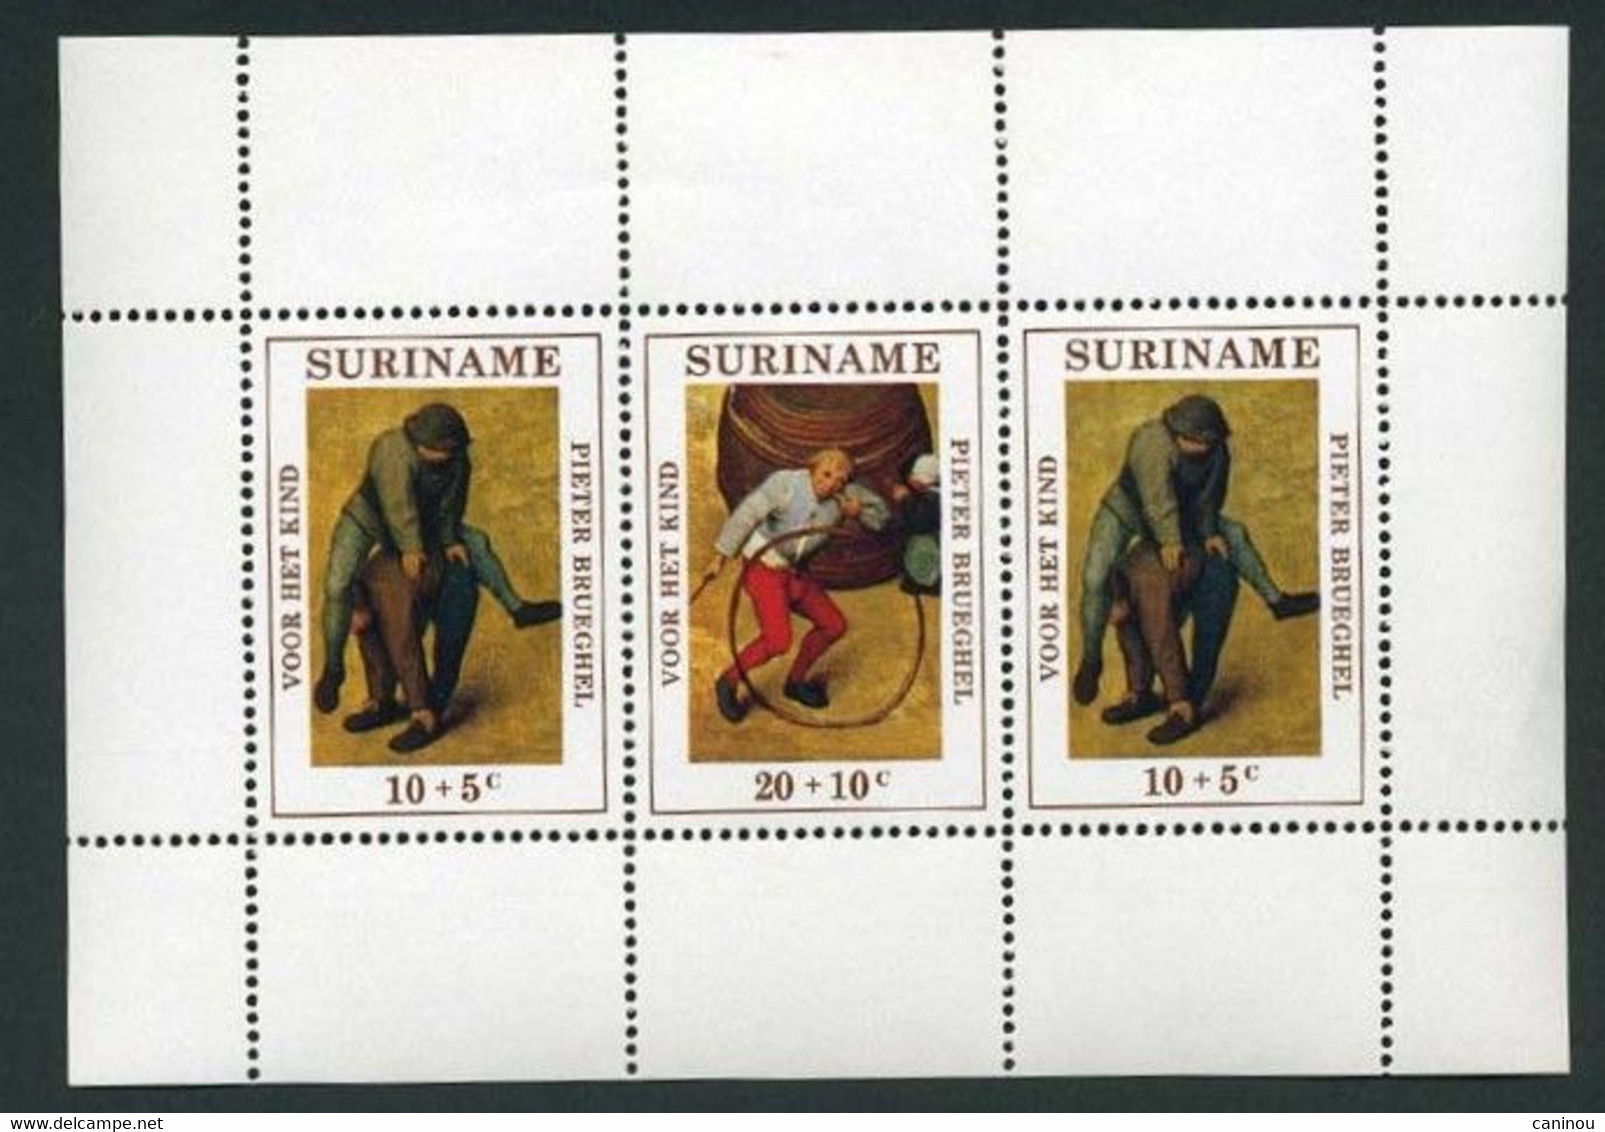 SURINAM BLOC Y&T BF 11 ENFANCE JEUX TABLEAUX PIETER BRUEGHEL 1971 NEUF SANS CHARNIERES - Surinam